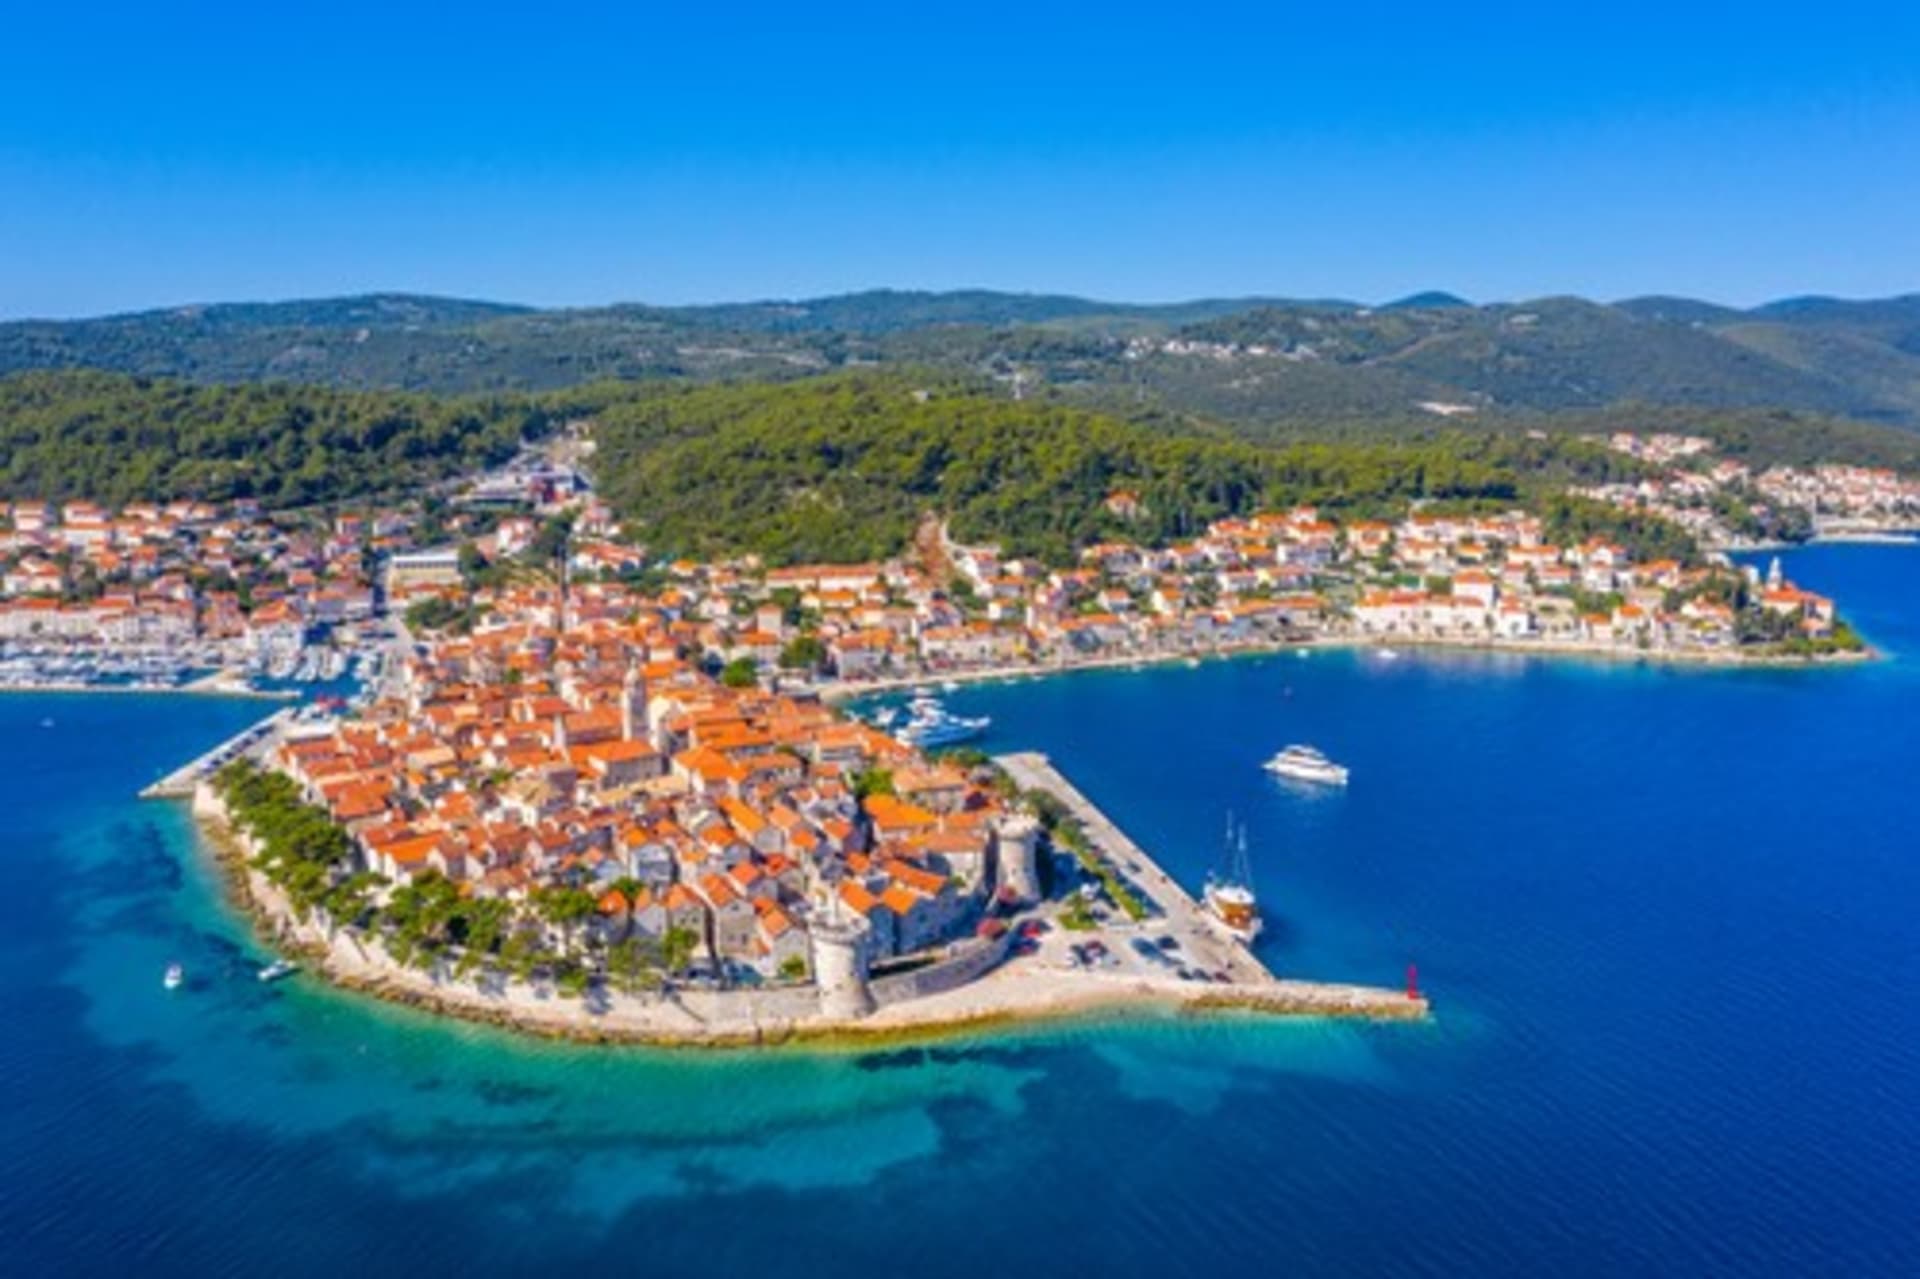 Pohled na město Korčula, které leží na stejnojmenném ostrově